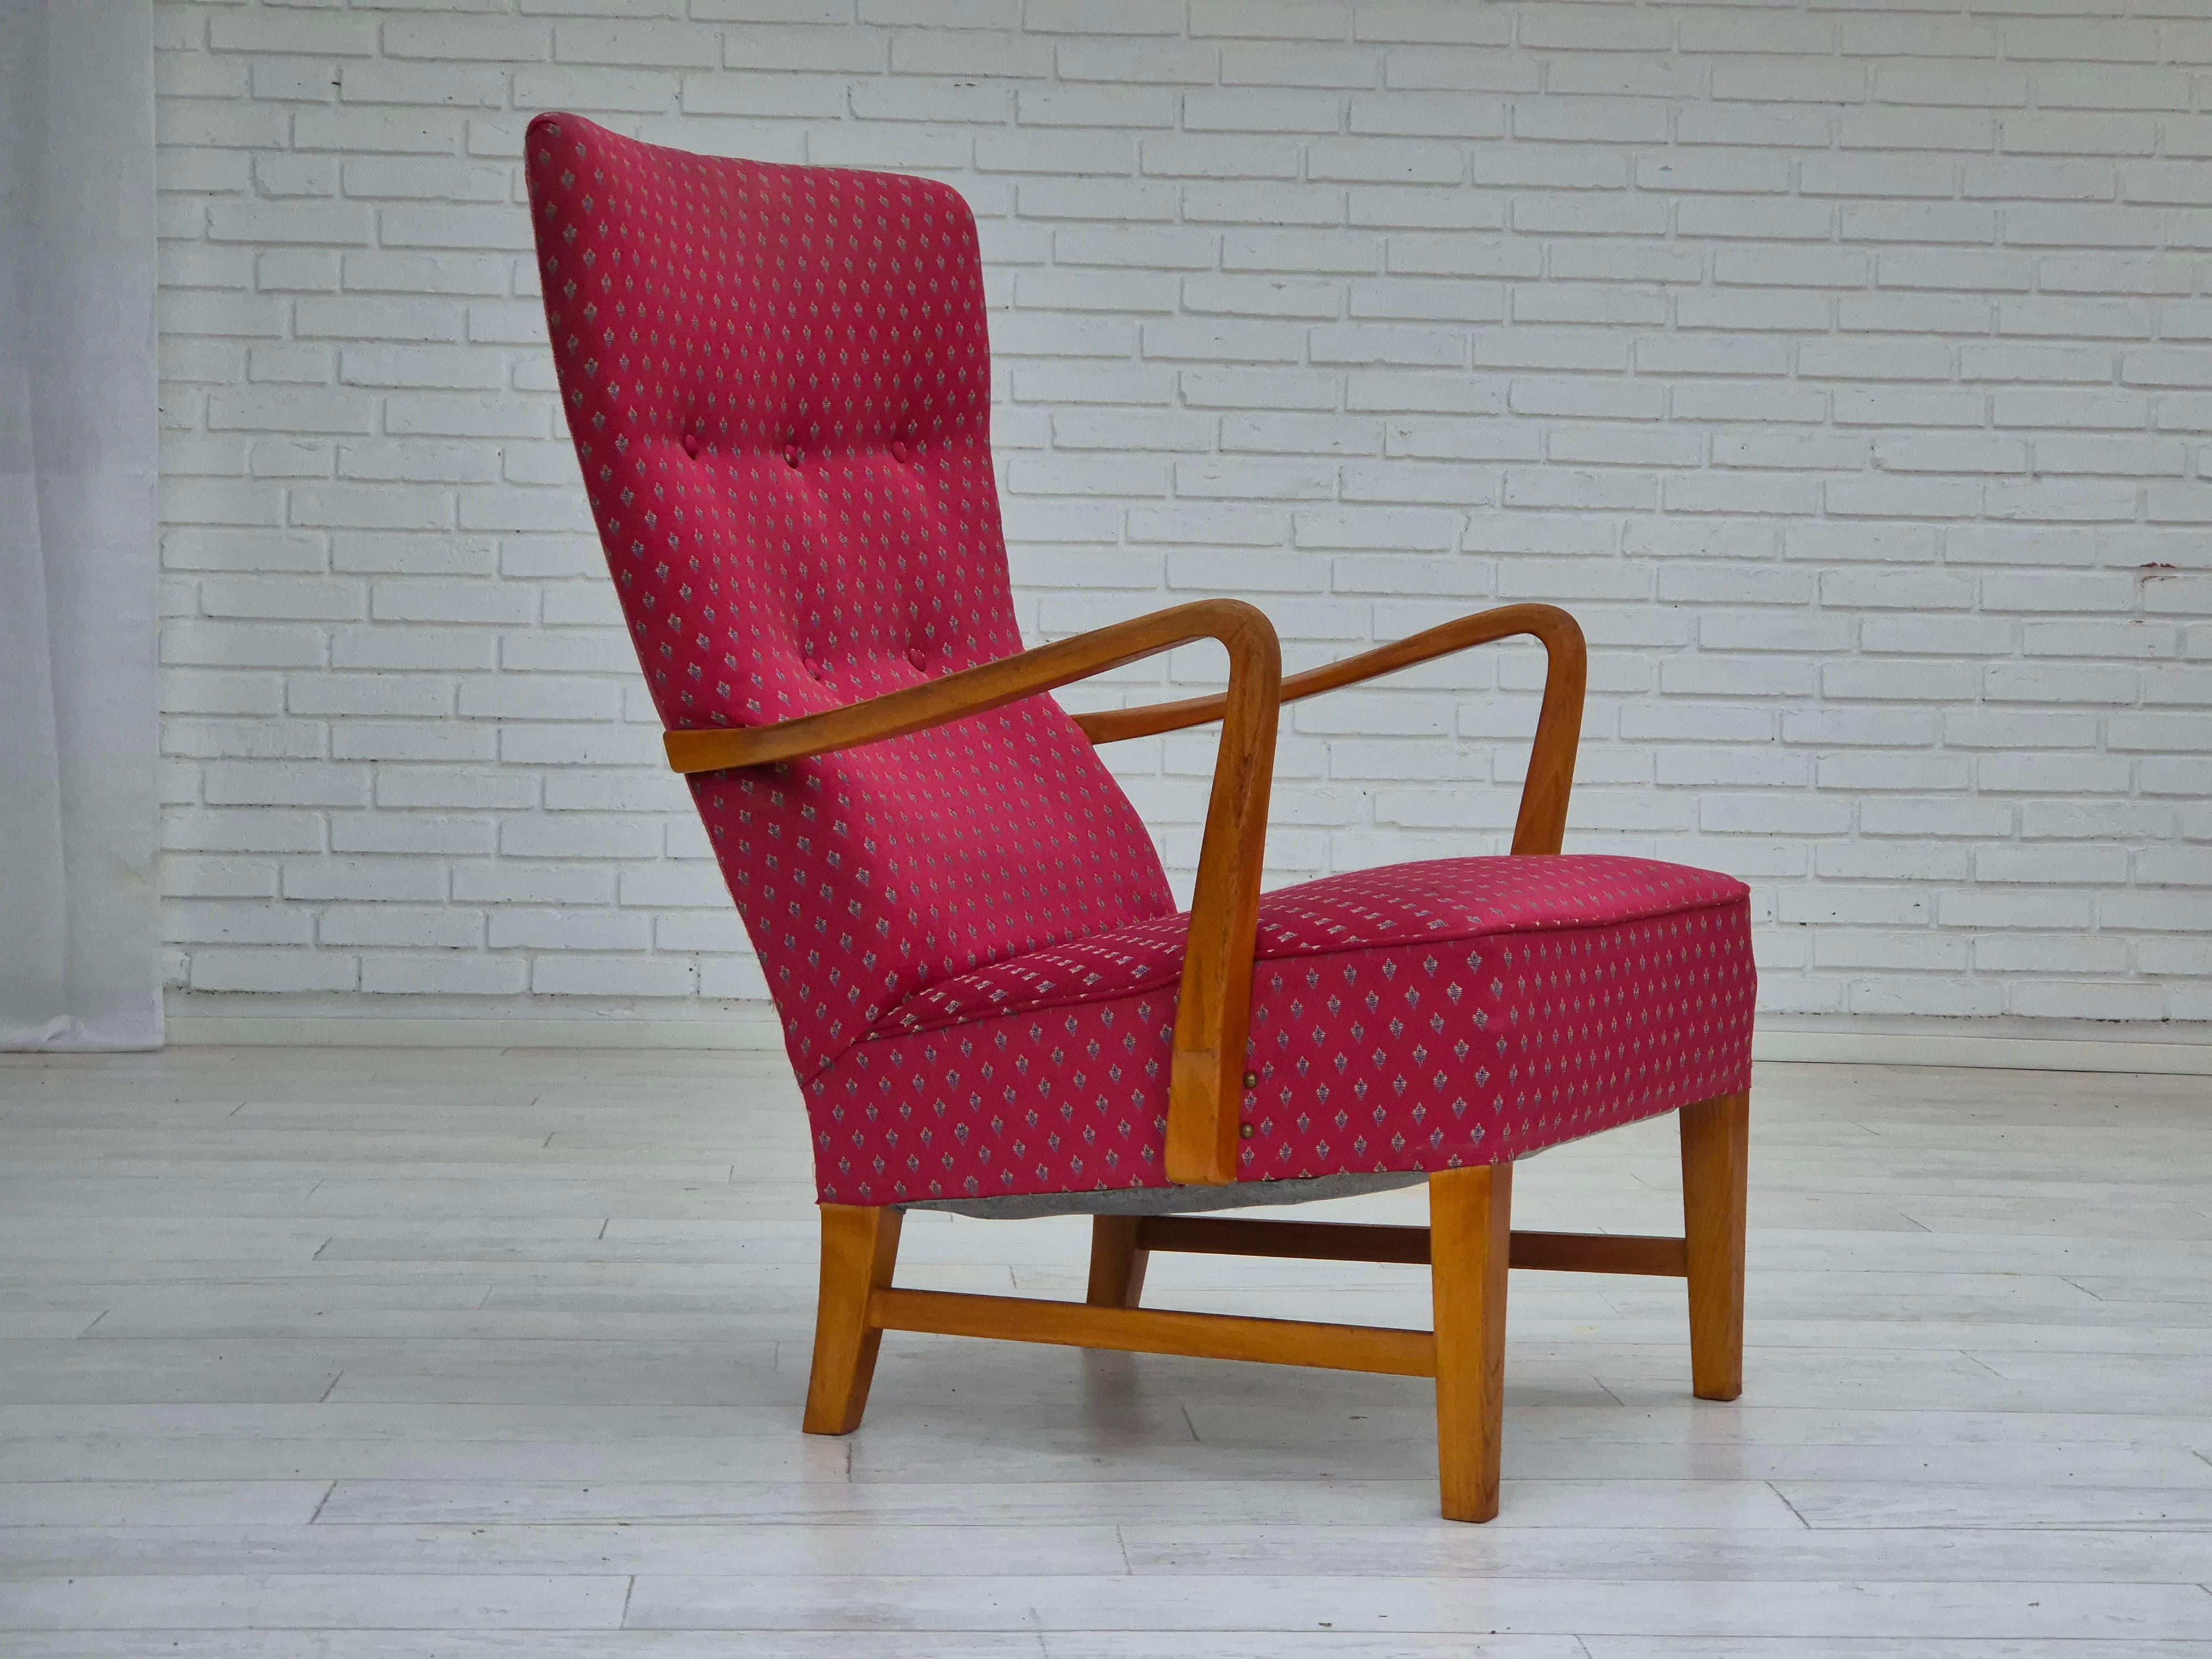 Chaises scandinaves des années 1970 en très bon état d'origine : pas d'odeurs ni de taches. Tissu d'ameublement rouge clair, pieds et accoudoirs en frêne. Ressorts dans le siège. Fabriqué par un fabricant de meubles norvégien dans les années